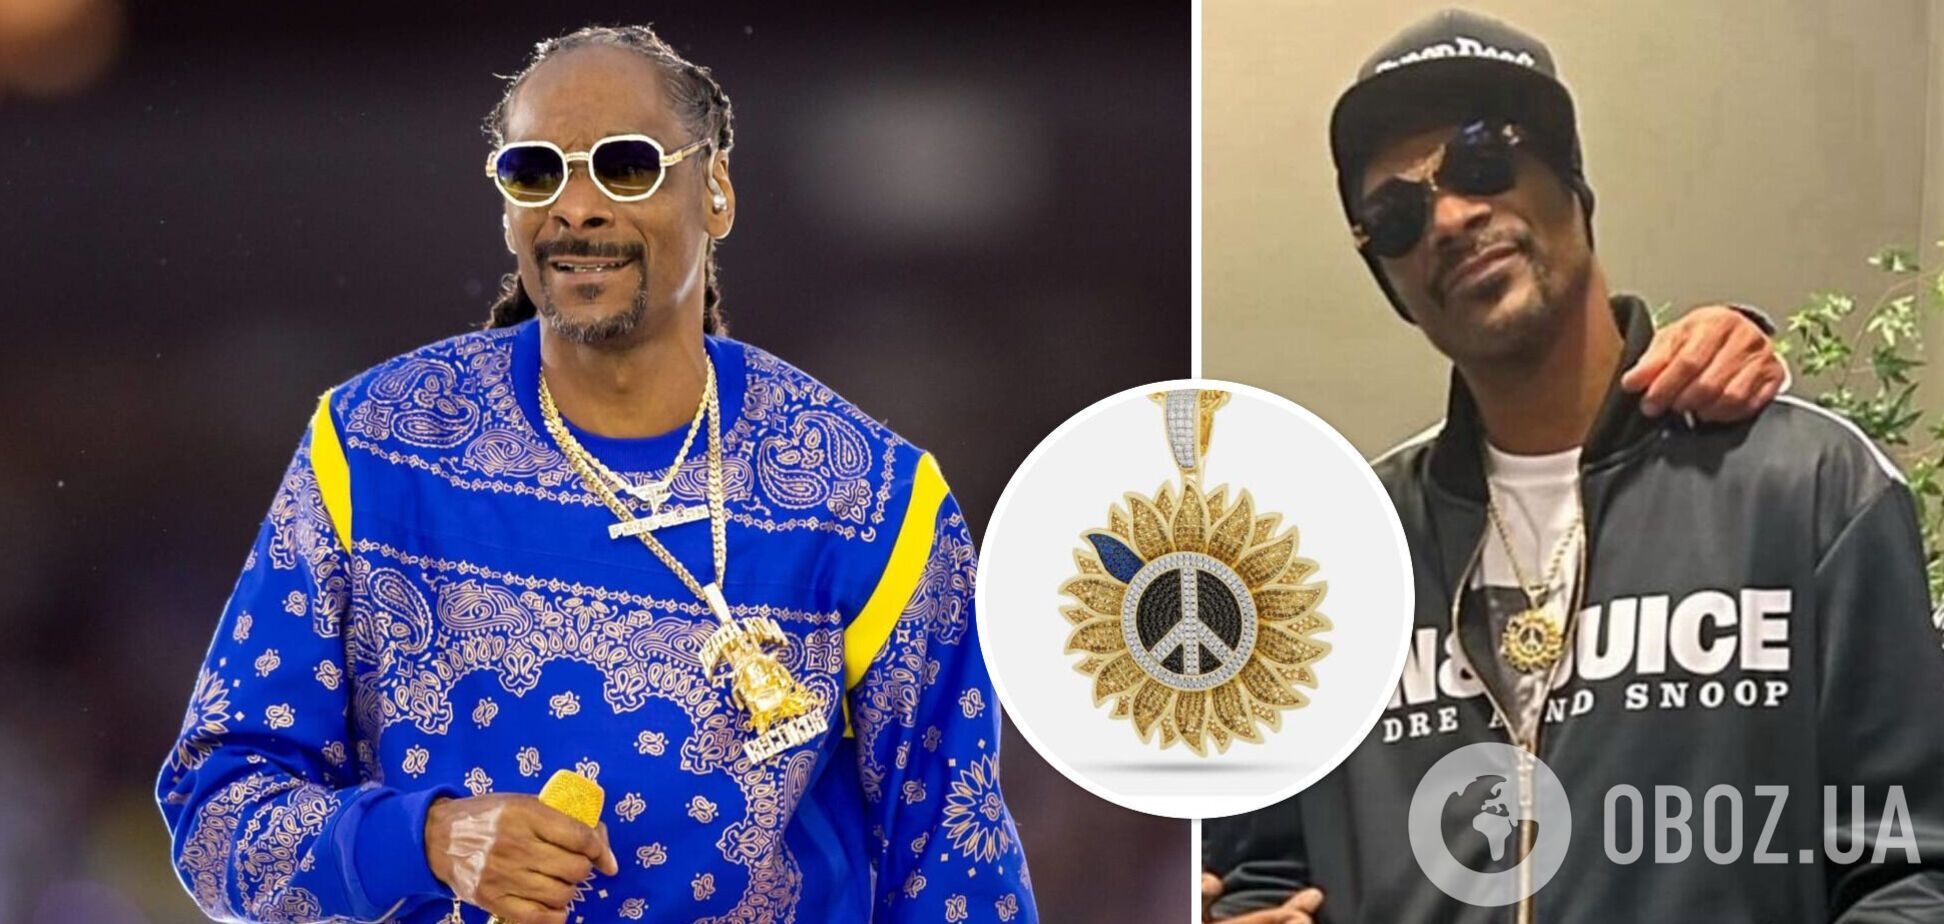 'Наш козак!' Репера Snoop Dogg помітили з прикрасою на підтримку України. Фото